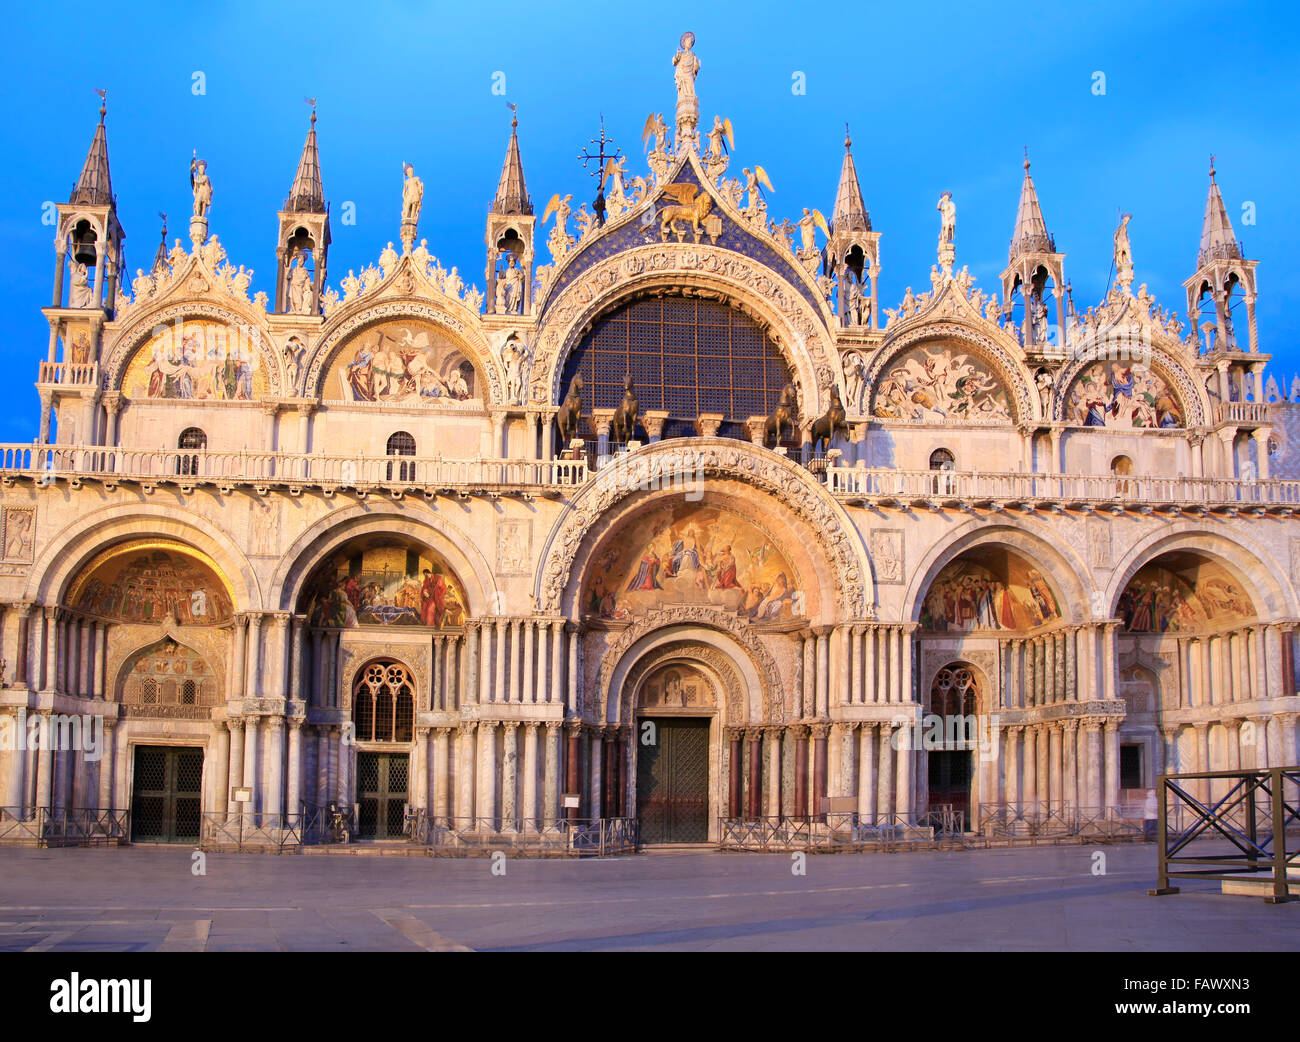 The facade of the Basilica di San Marco at dusk, Venice, Italy Stock Photo